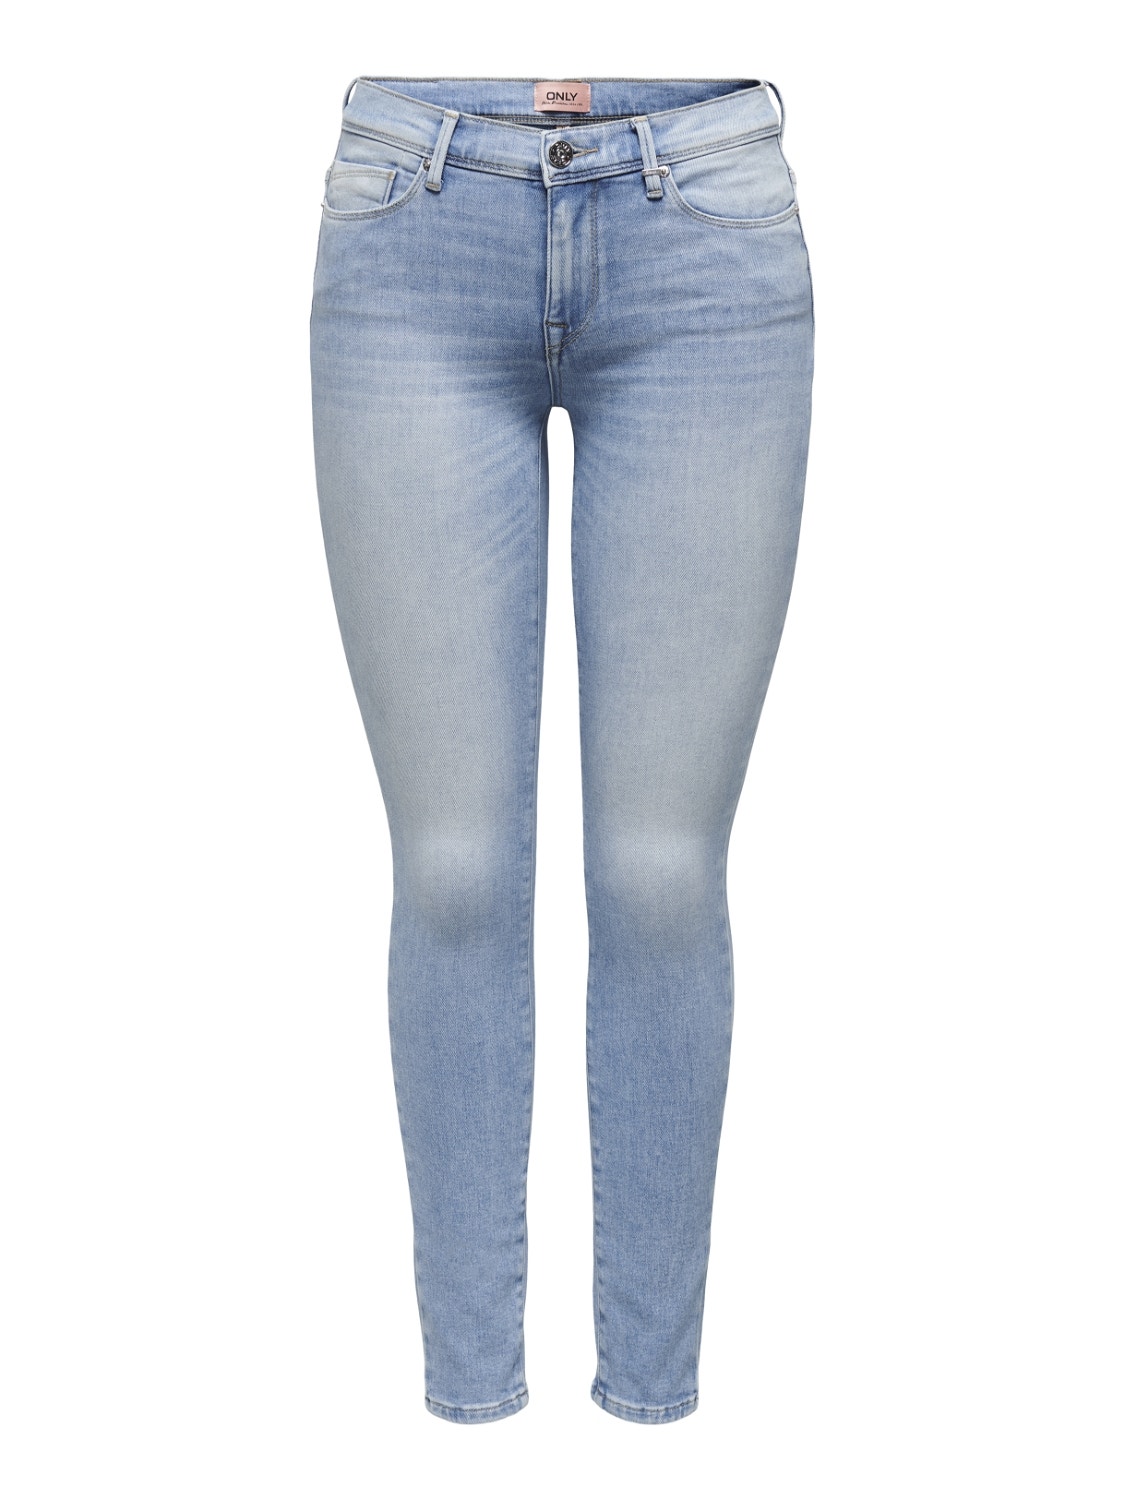 ONLY ONLShape Regular Waist Skinny Jeans -Light Blue Denim - 15244222